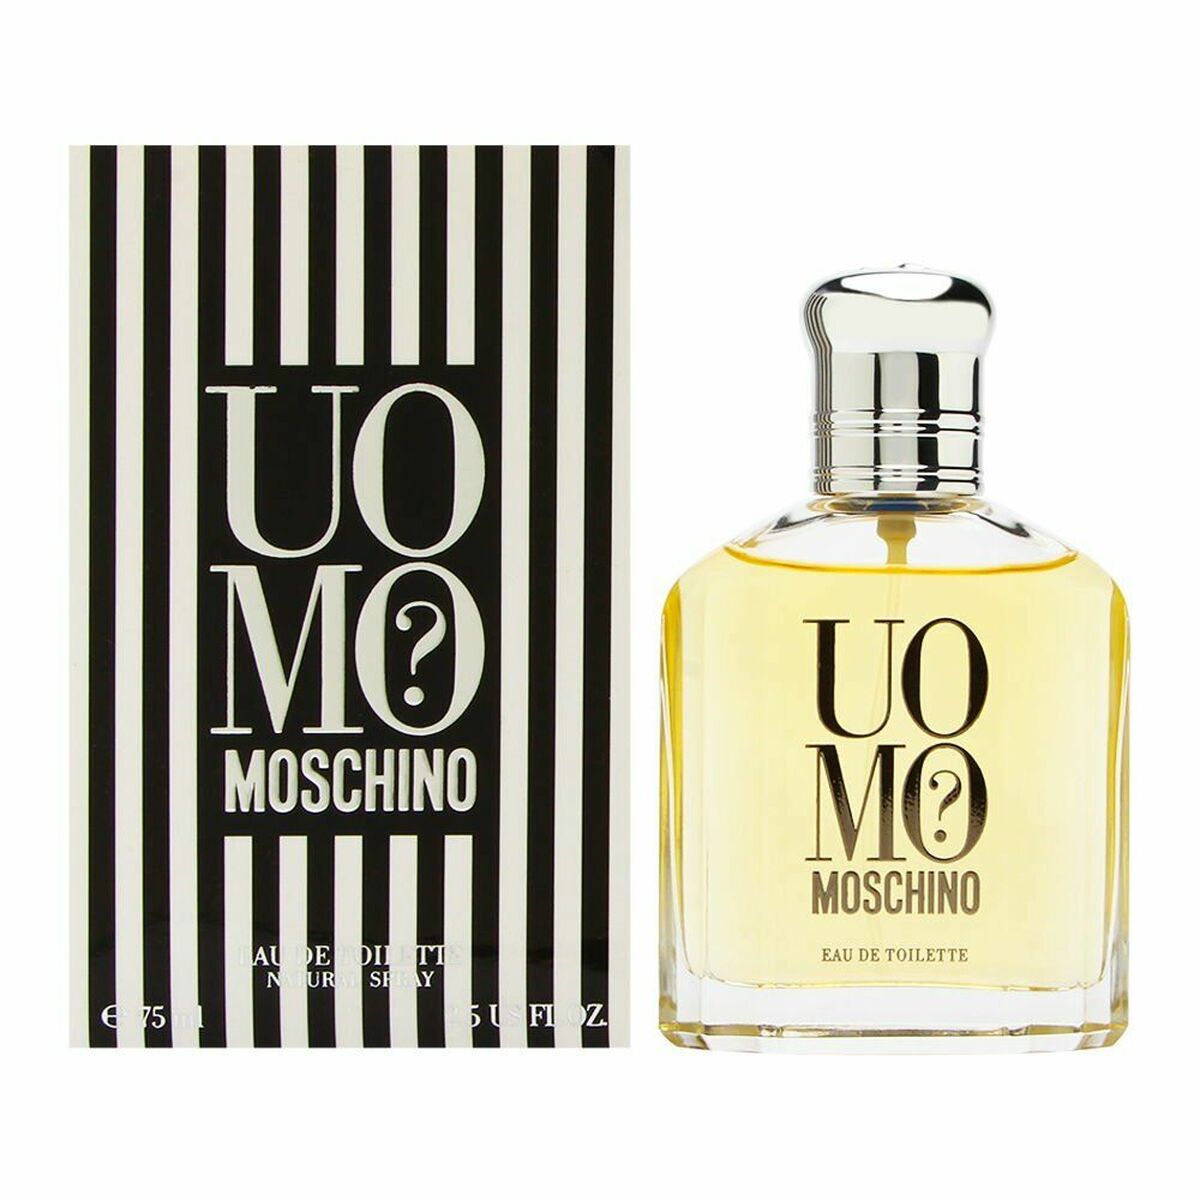 Parfum Homme Moschino EDT 75 ml Uomo?